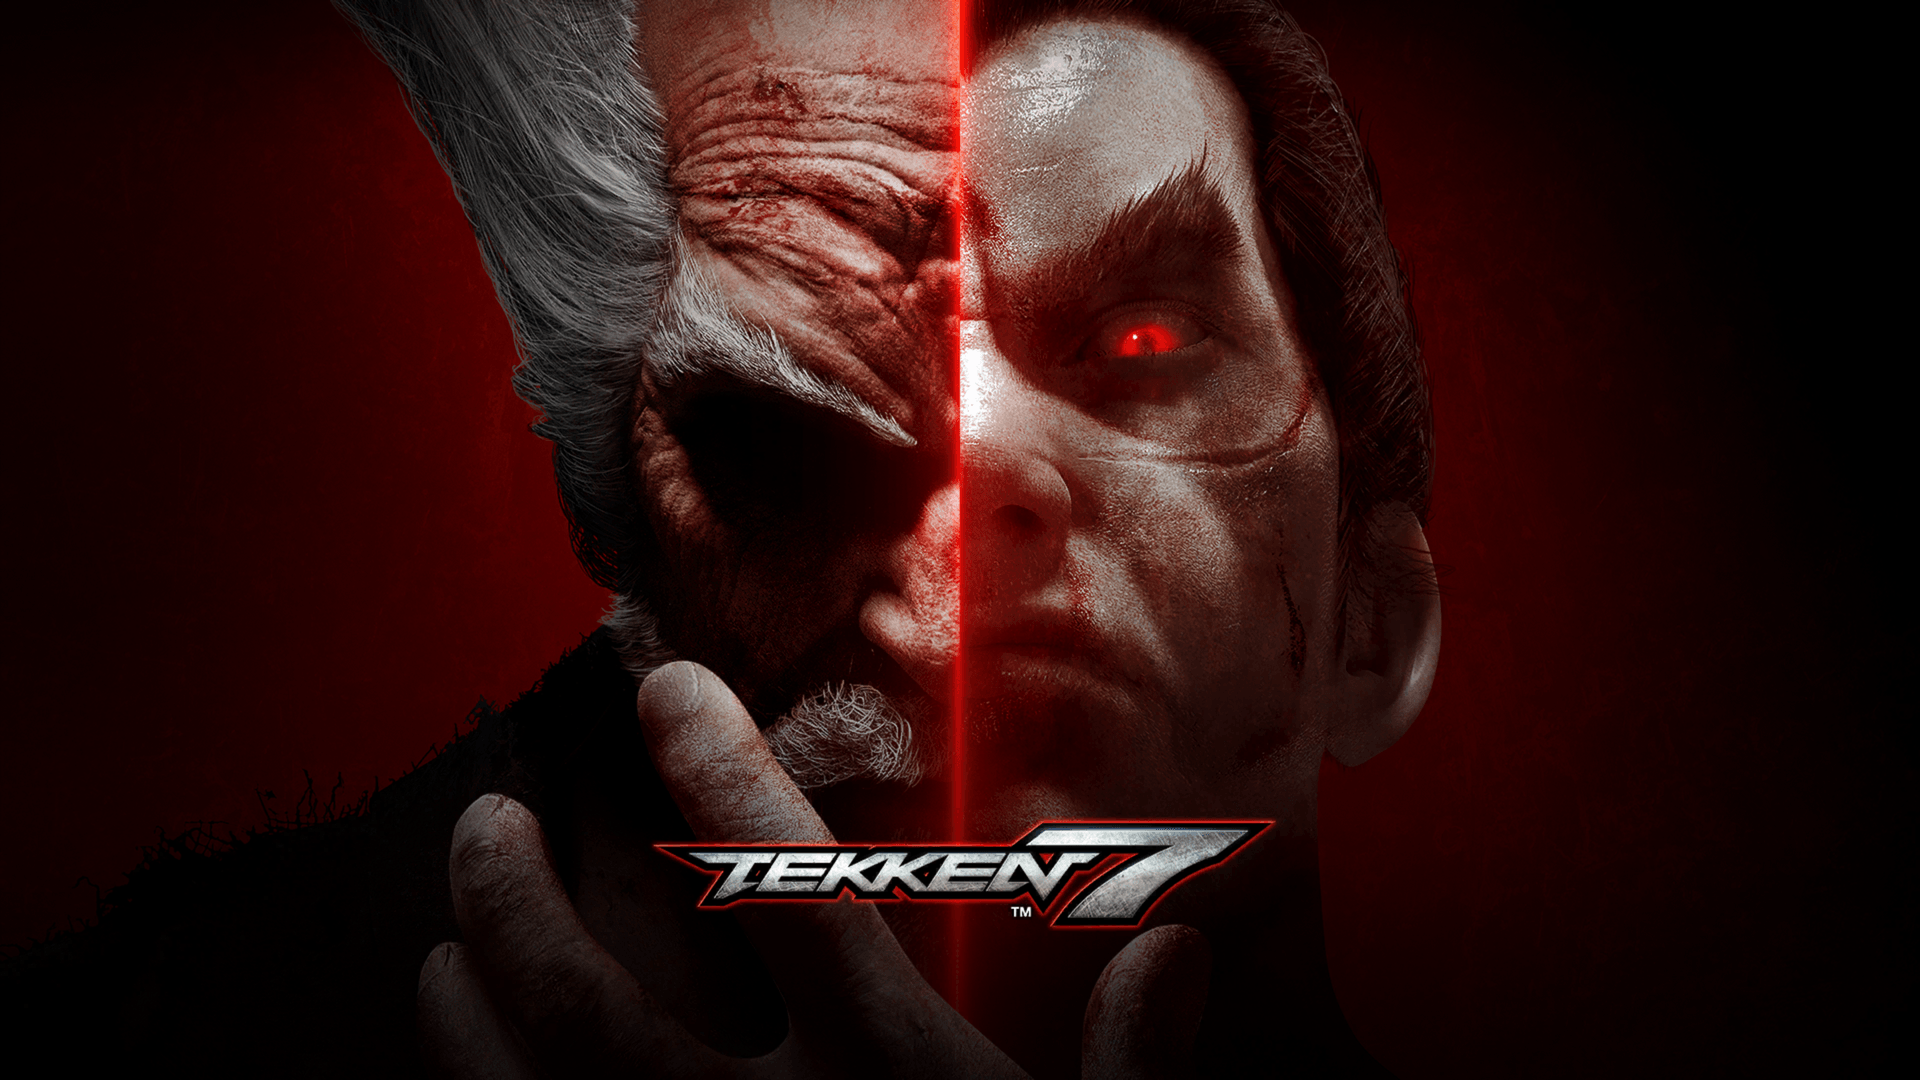 Tekken 7 Wallpapers